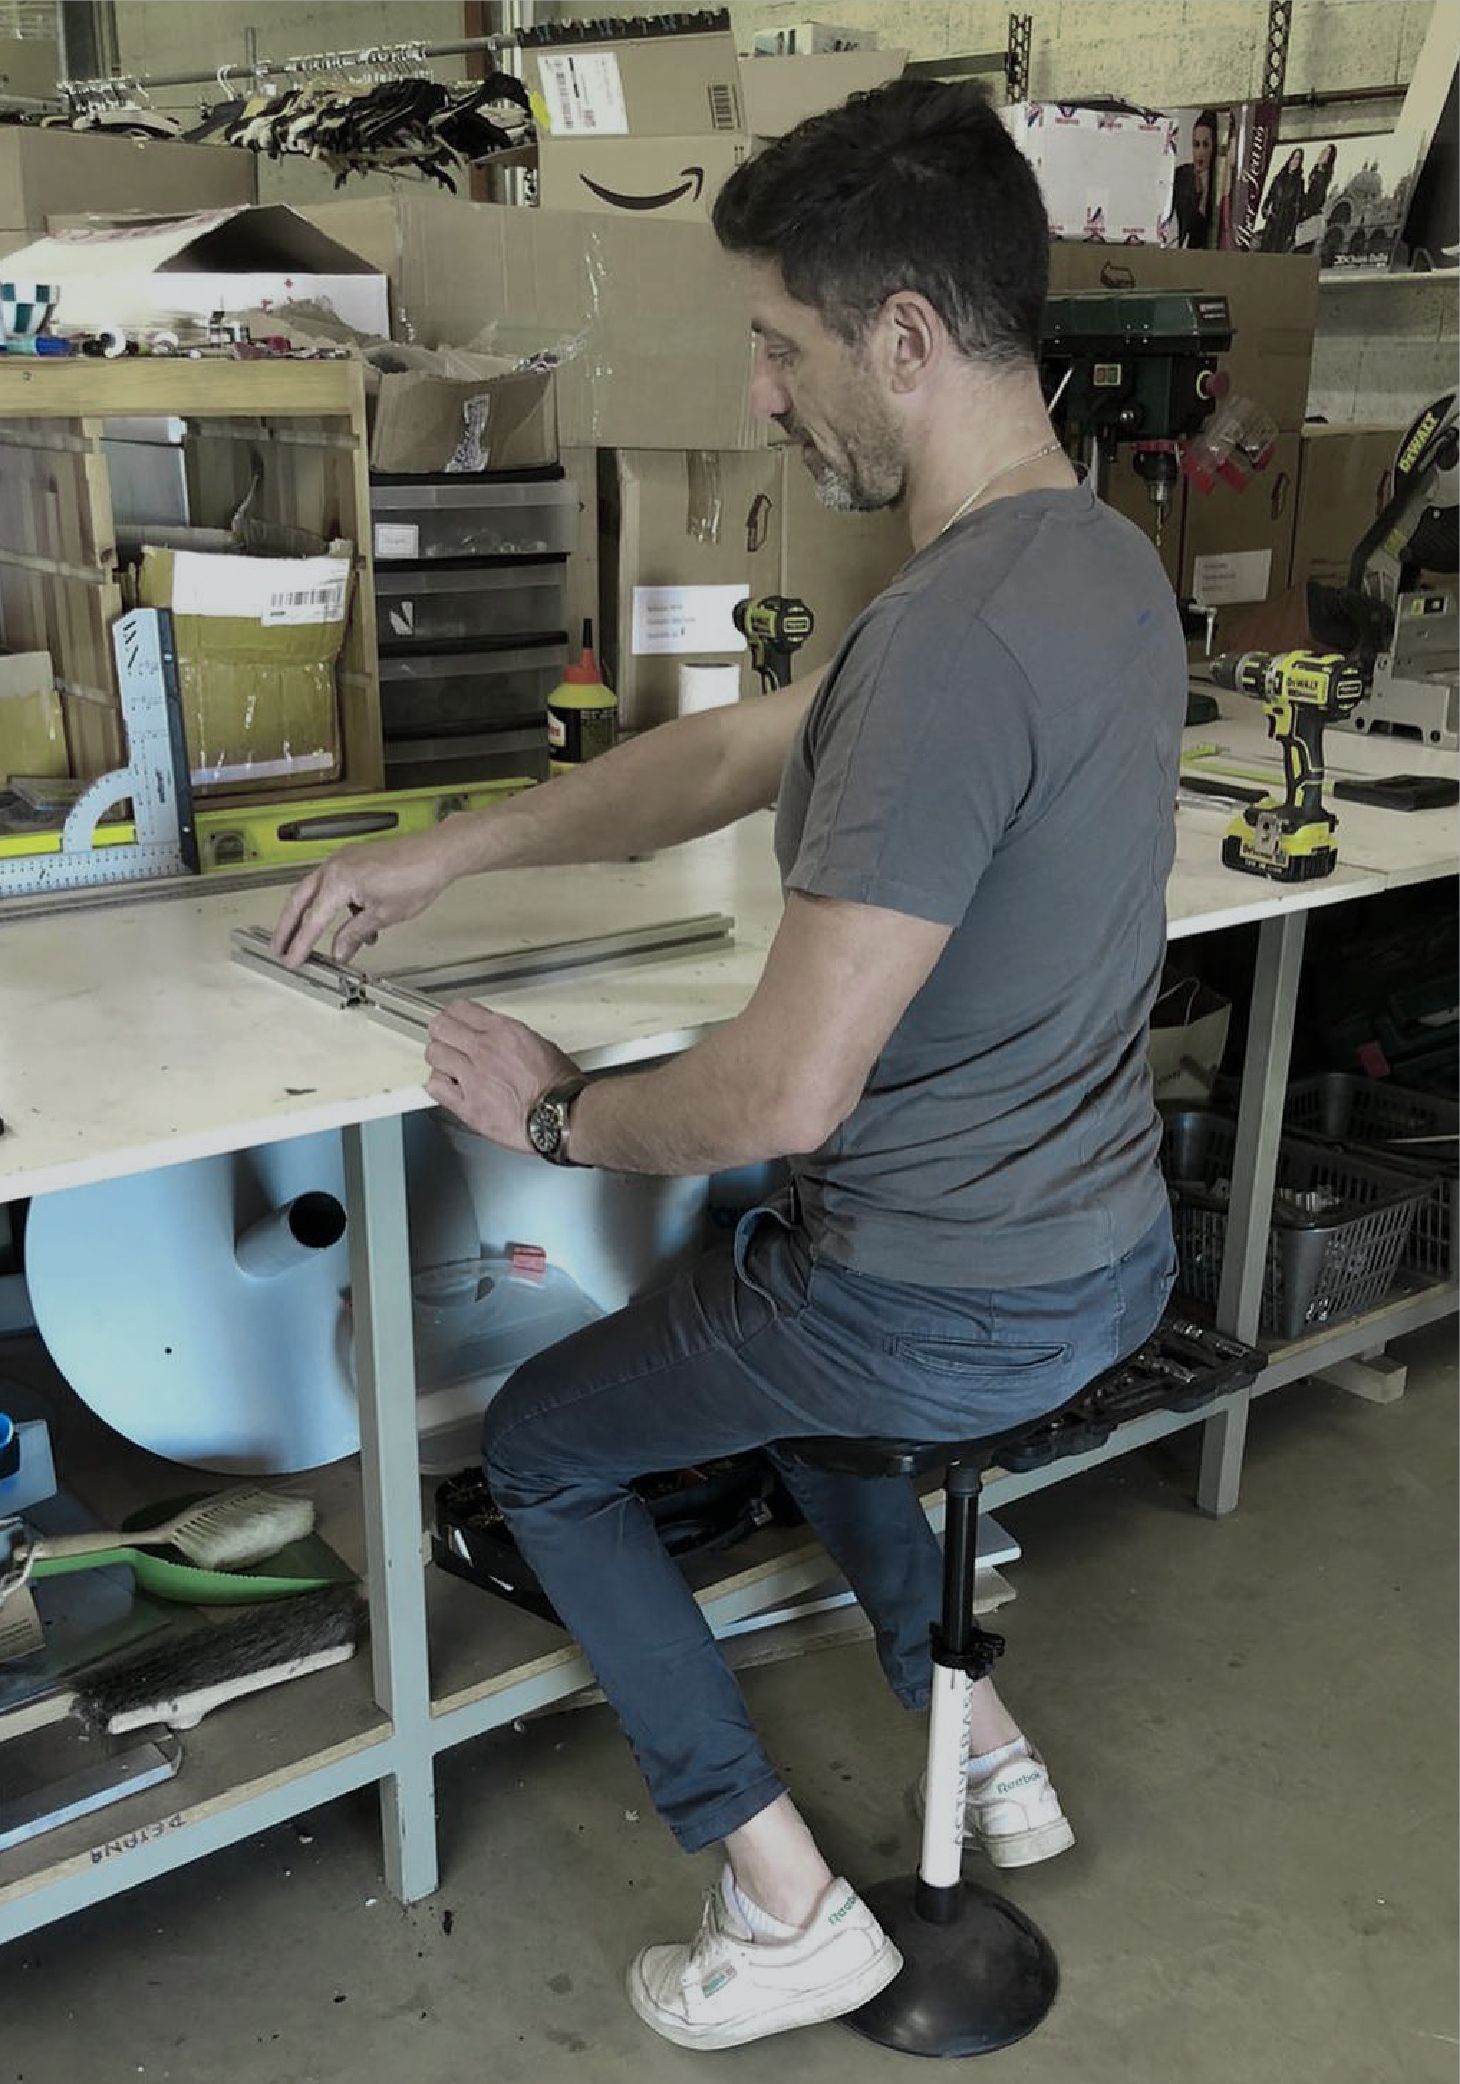 Un homme utilise le tabouret ergonomique ActiveBase pendant ses activités professionnelles au travail, sa posture est bonne.